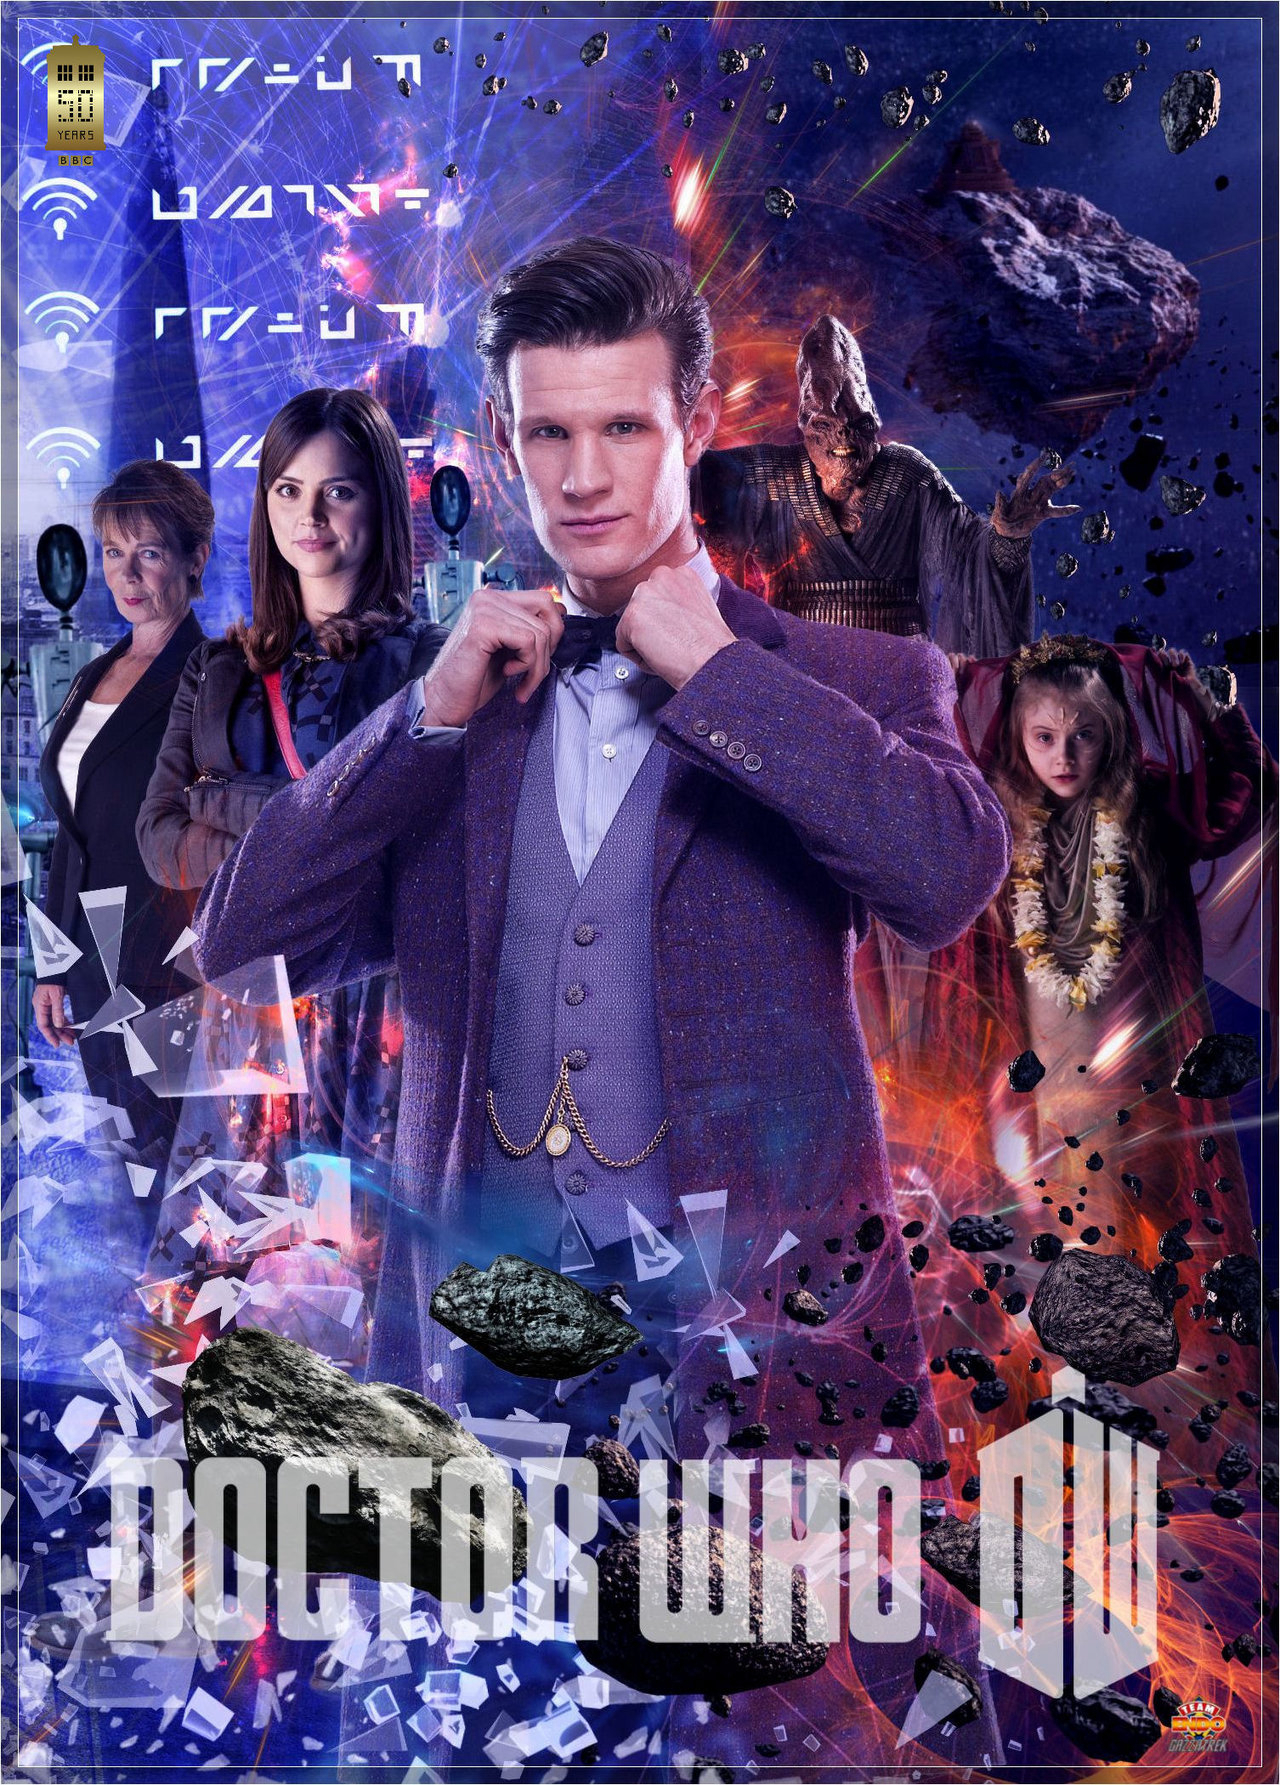 Xem Phim Bác Sĩ Vô Danh Phần 7 (Doctor Who (Season 7))